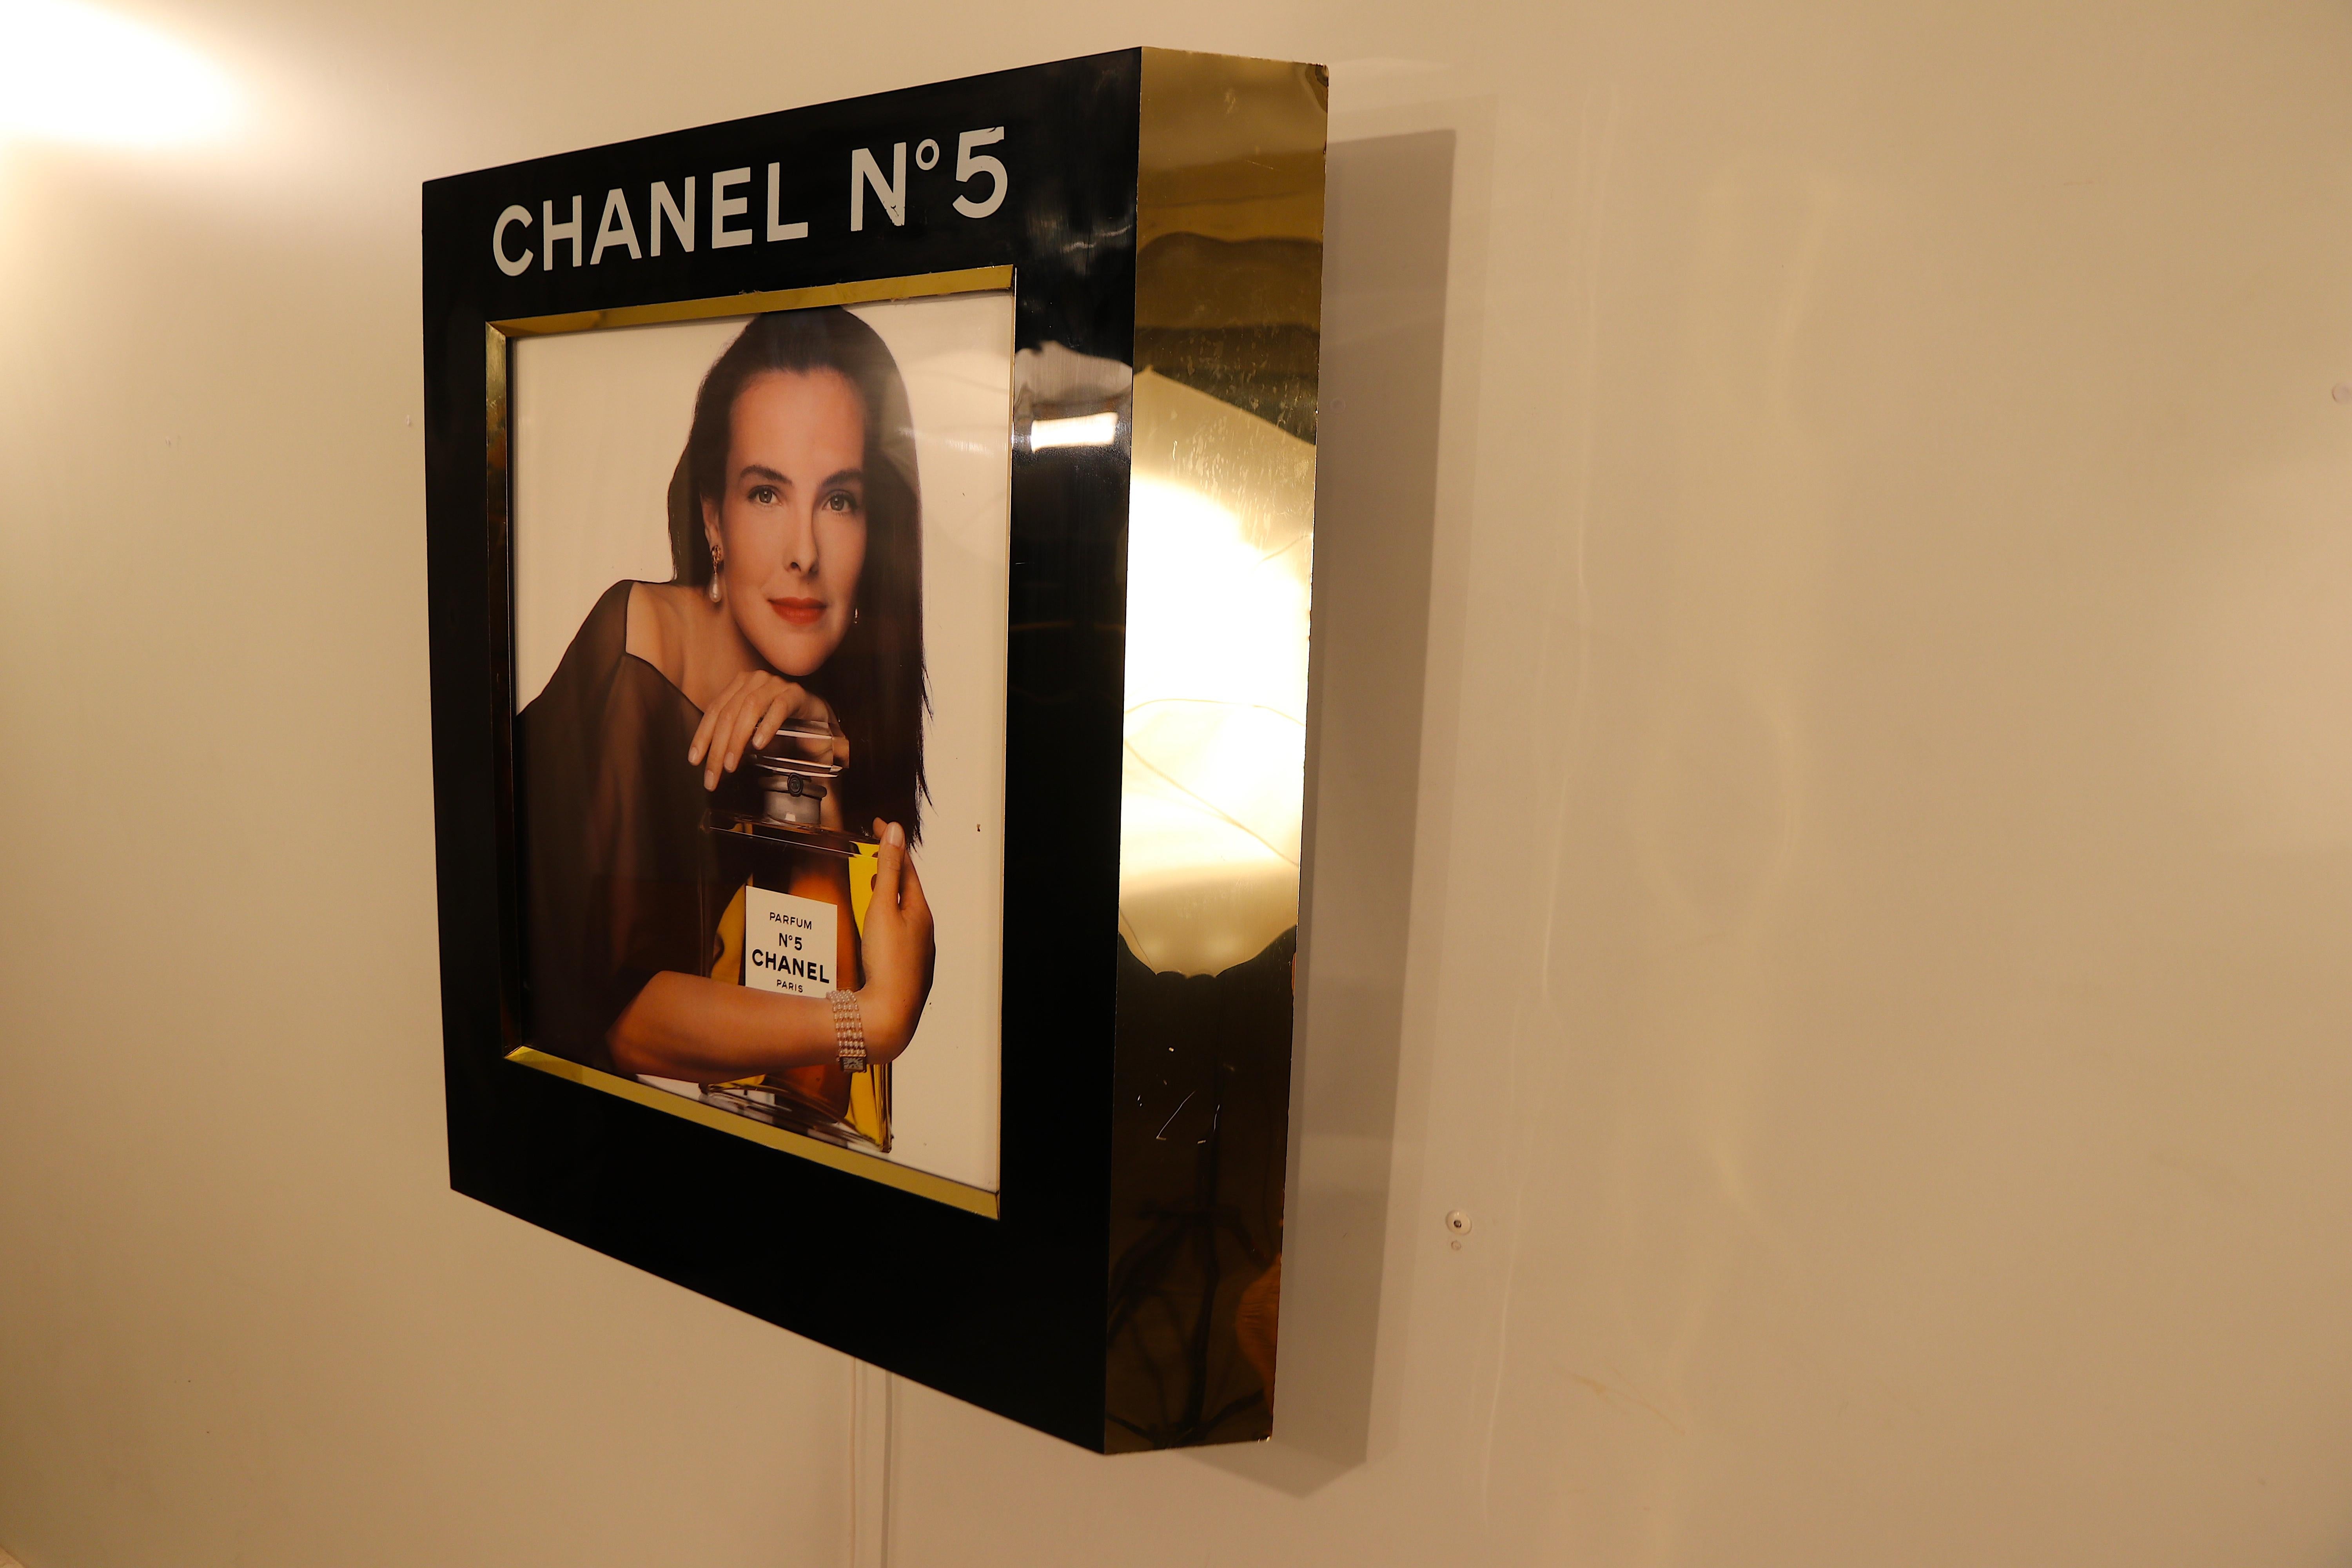 Wunderschönes:: von hinten beleuchtetes Original-Wanddisplay für Chanel-Werbung:: das früher in den Parfümgeschäften des nur für Geschäftsflugzeuge zugänglichen Flughafens 